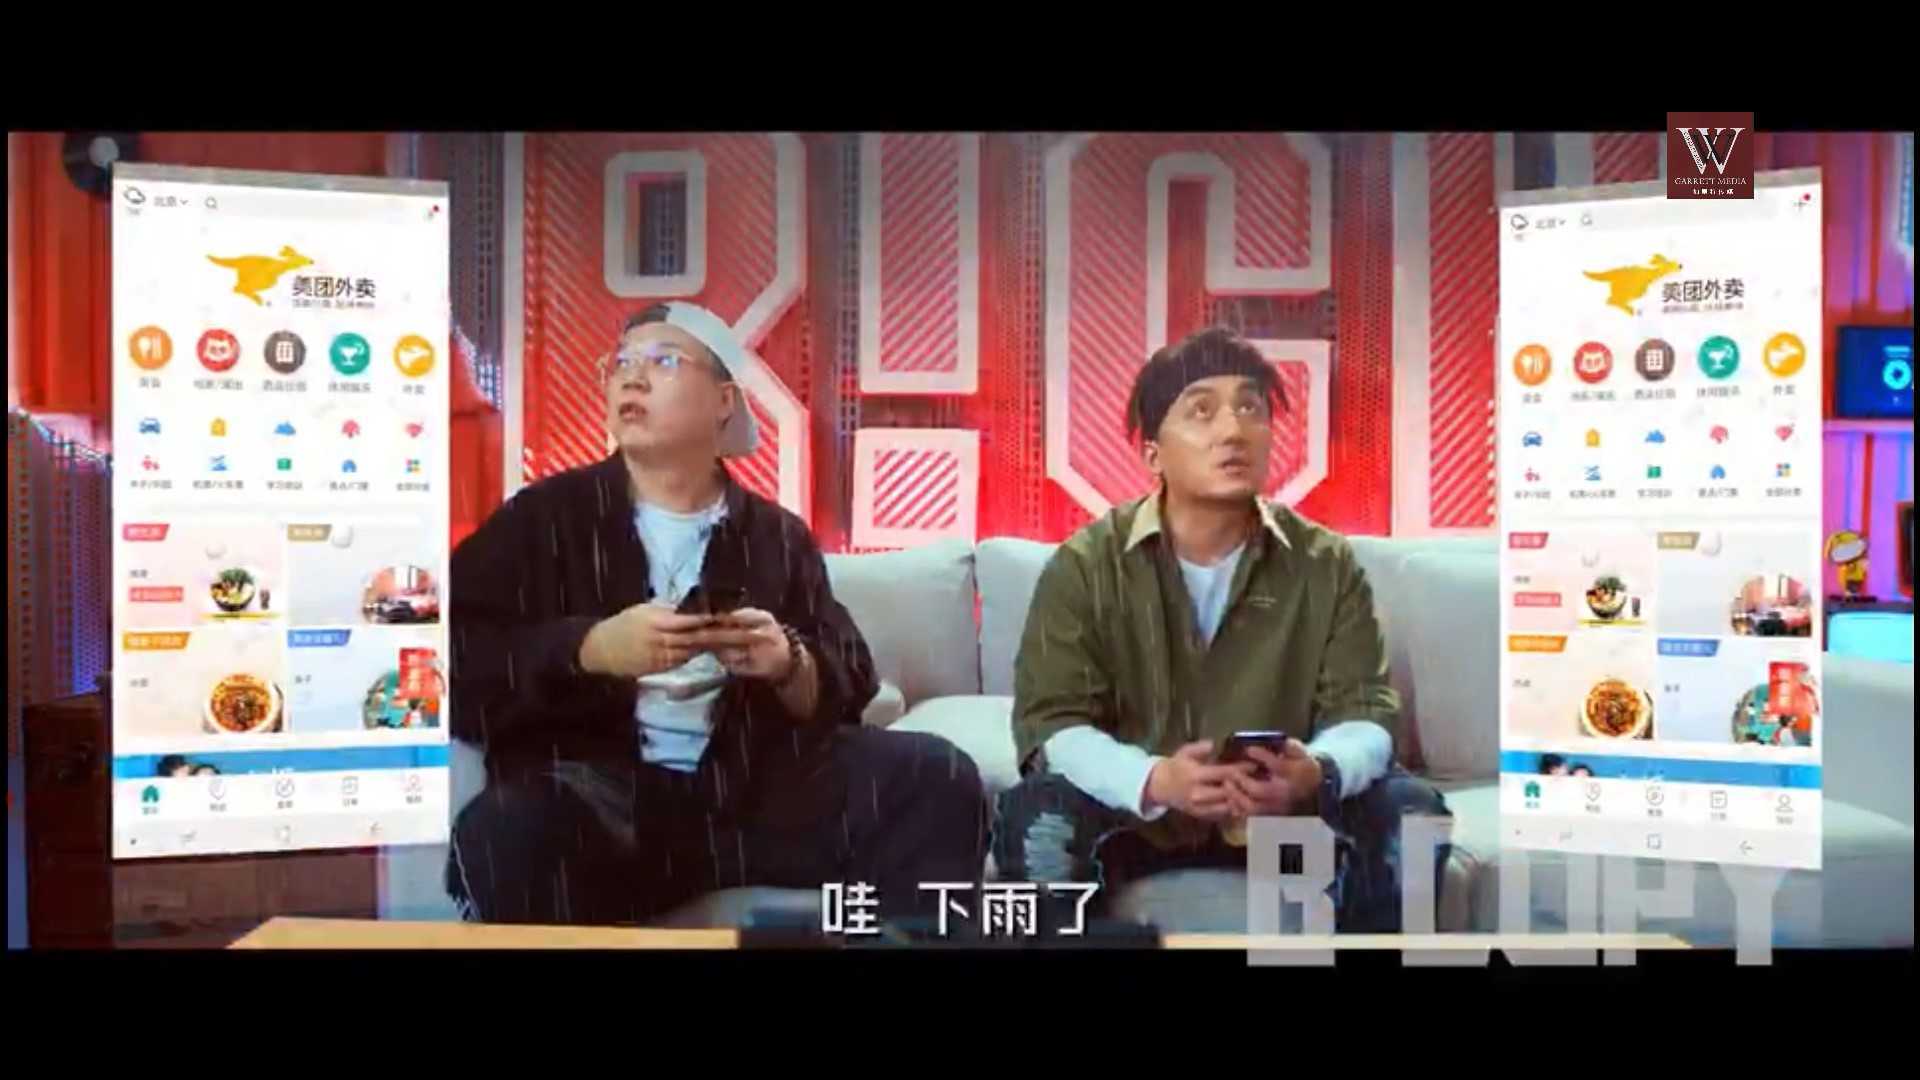 中国新说唱 中插广告 美团外卖